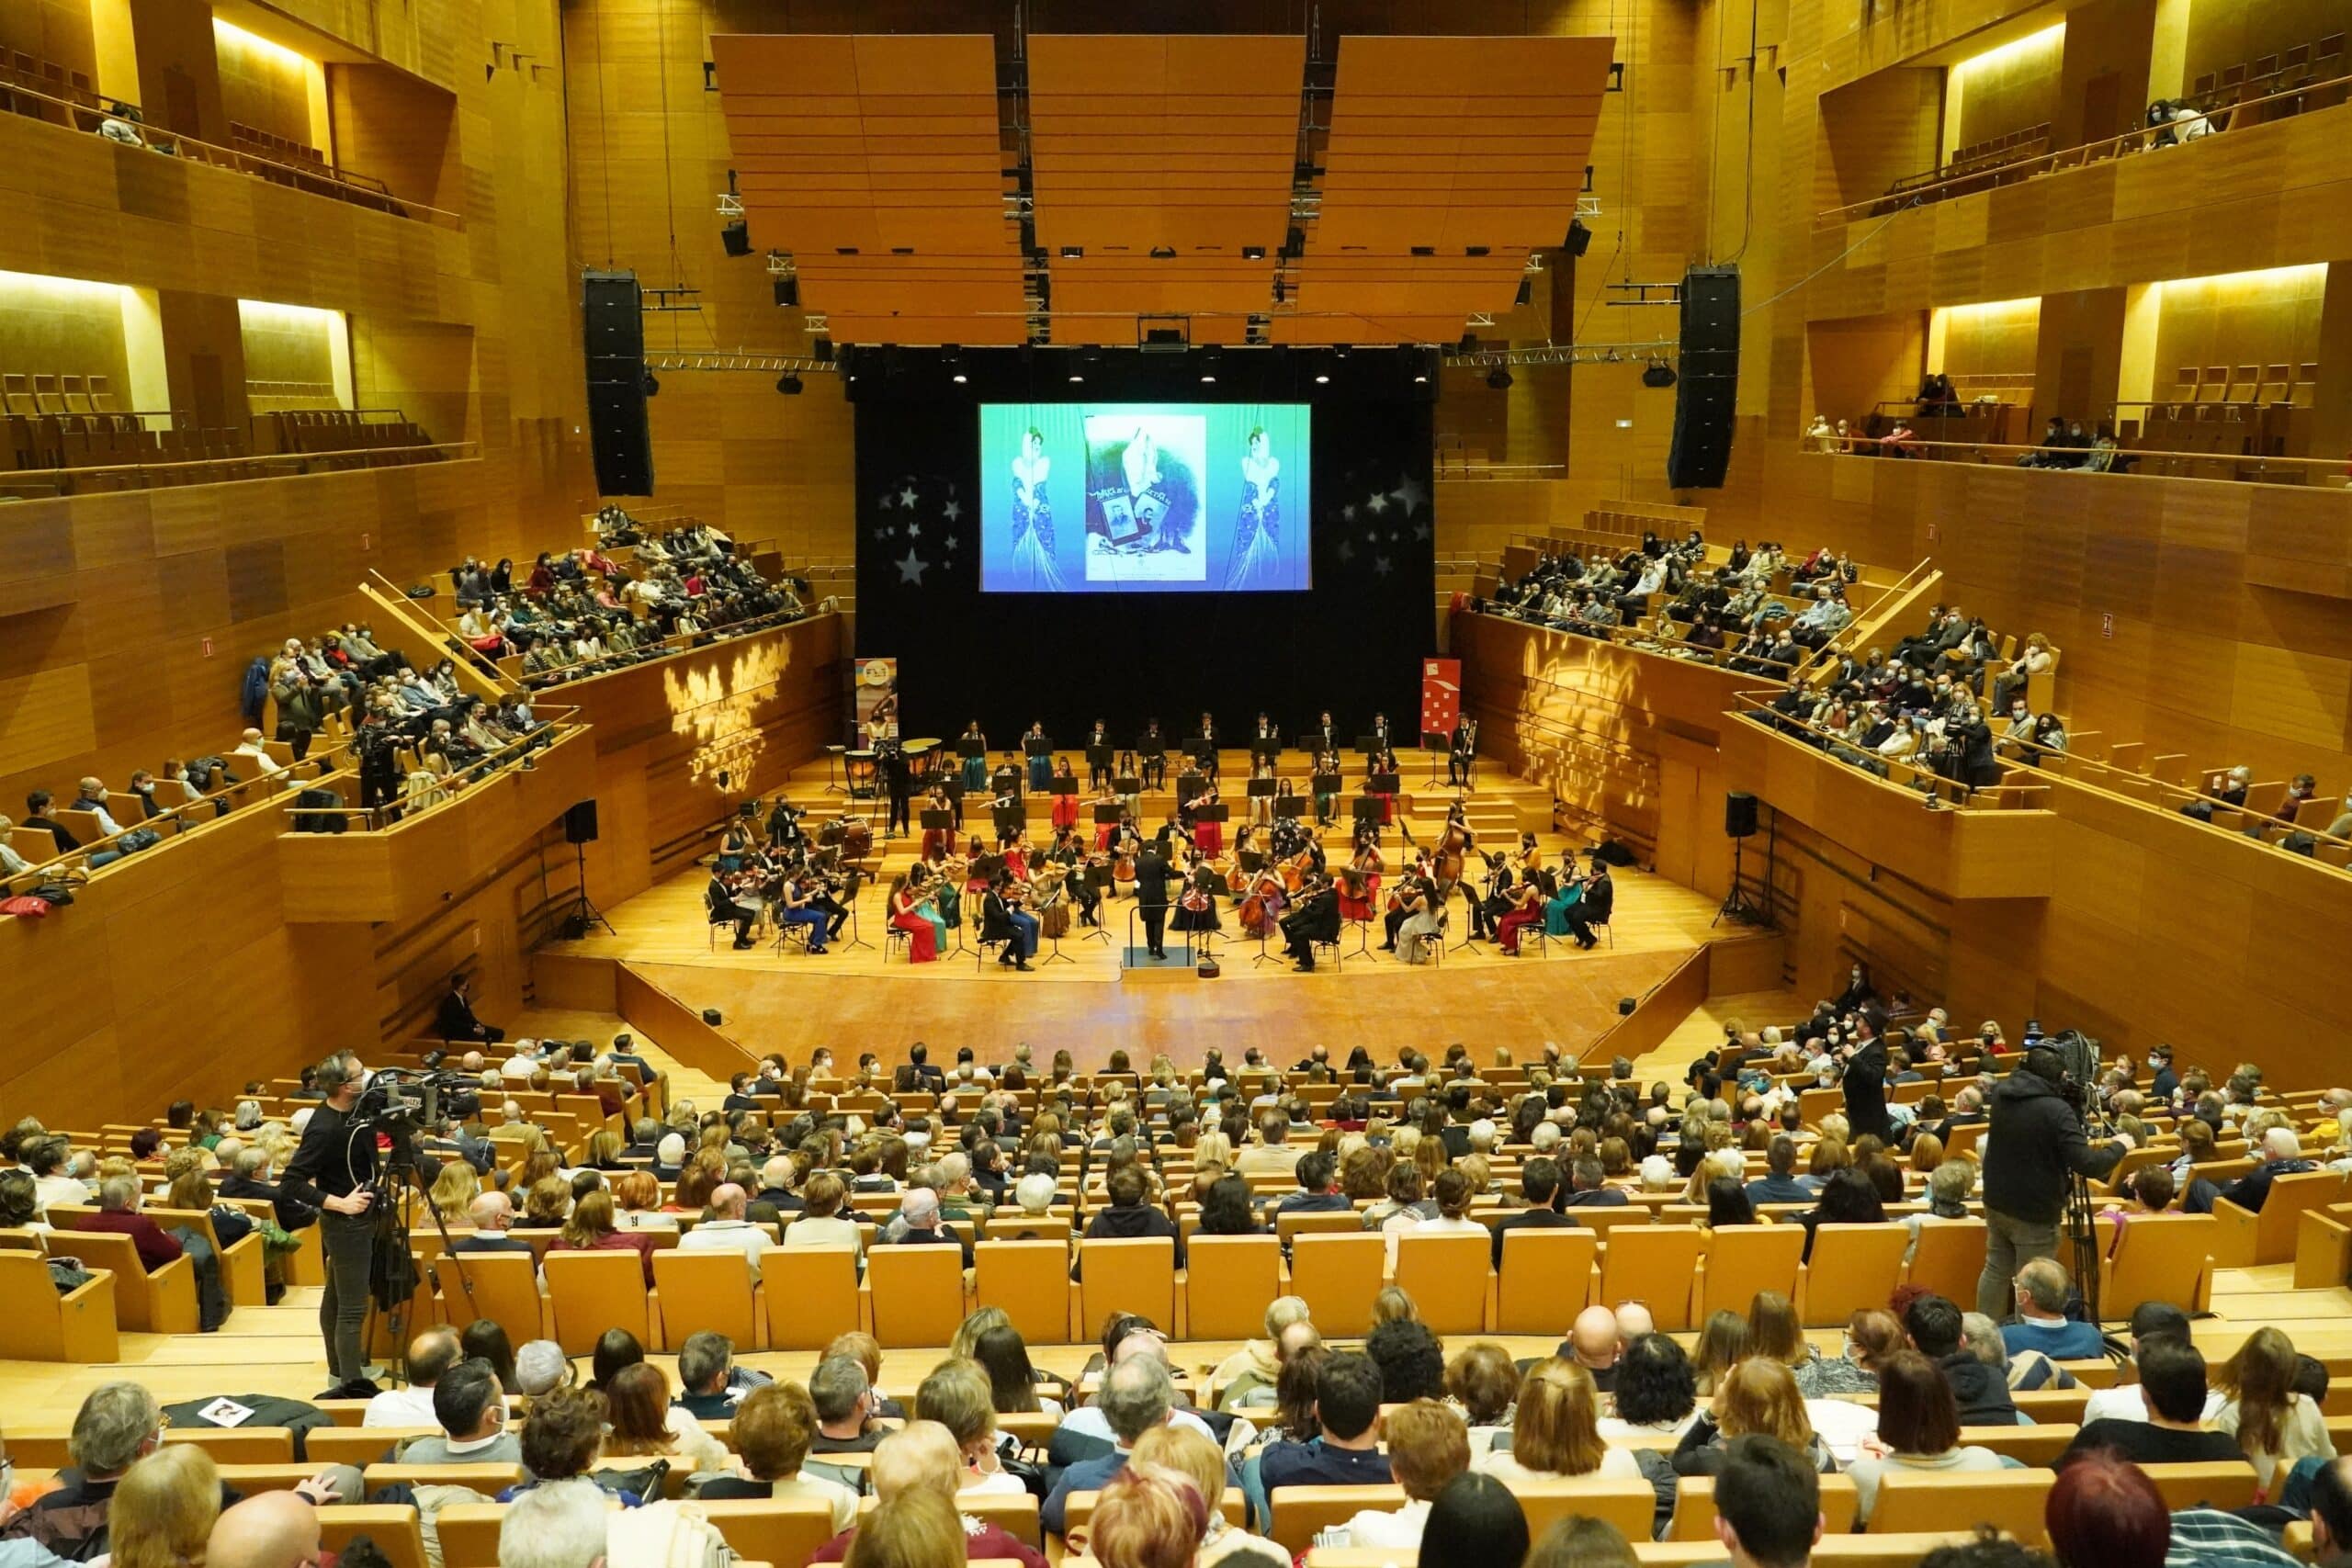 Valladolid acoge este domingo el tradicional concierto de Navidad en favor de Harambee